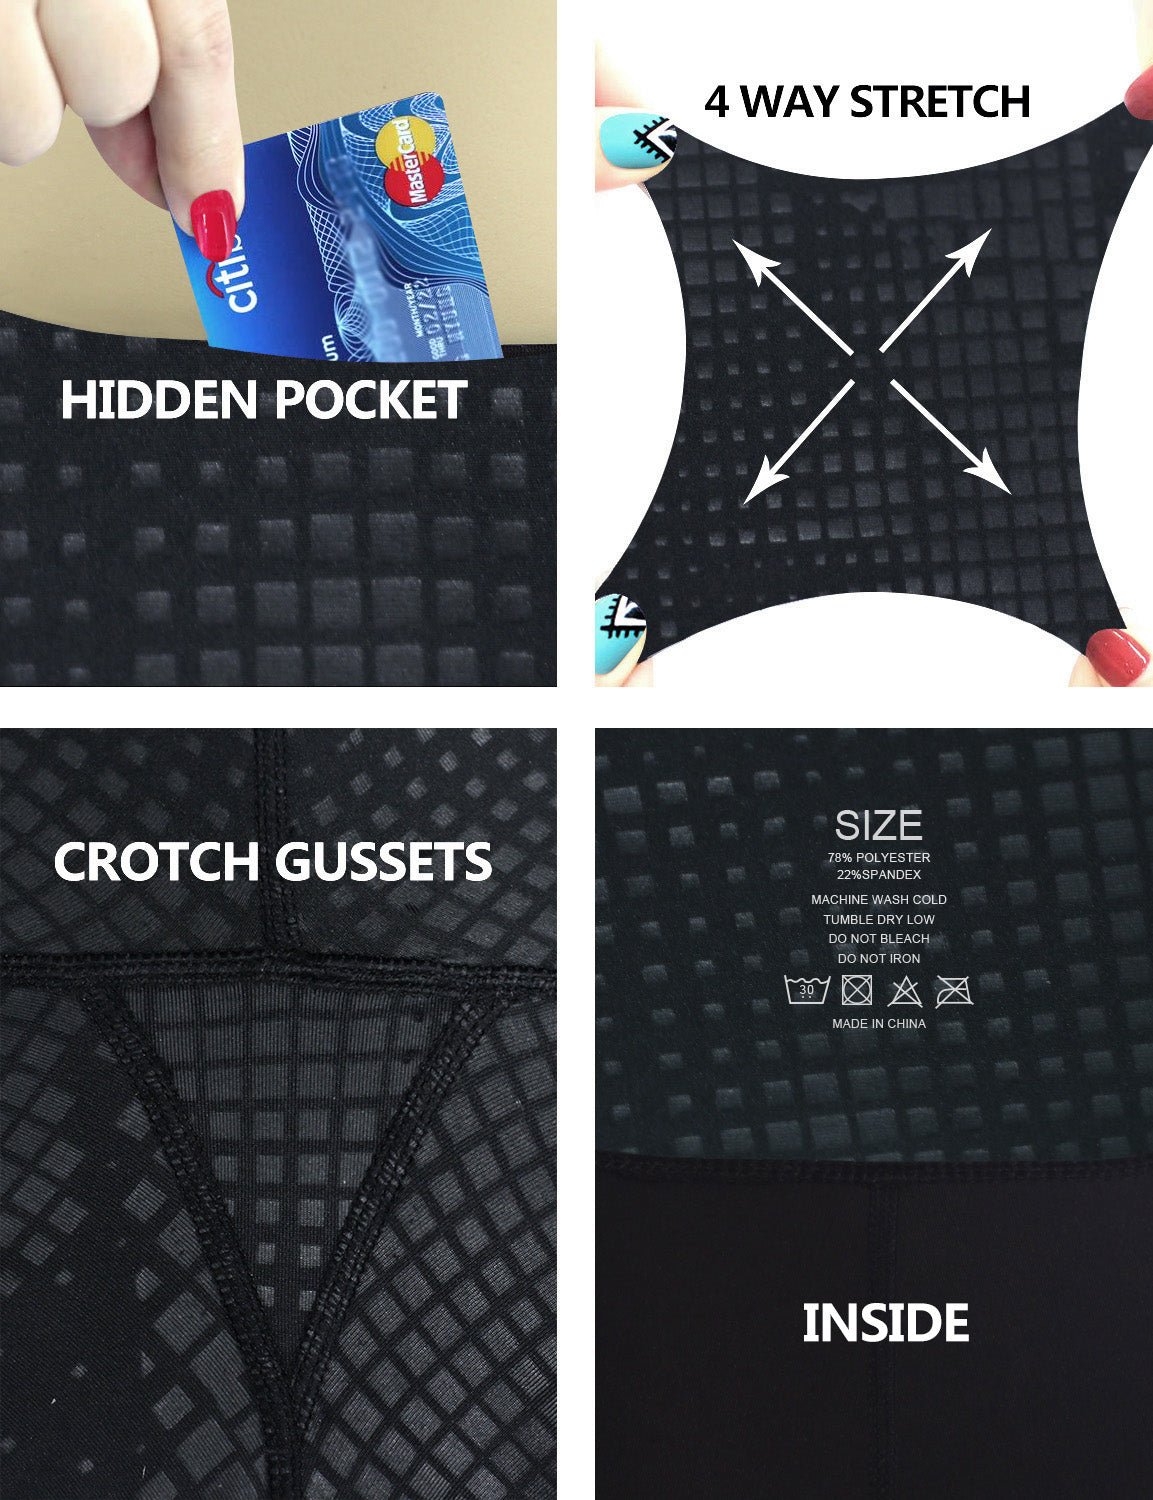 26" inseam 3D Printed Yoga Pants DISCO